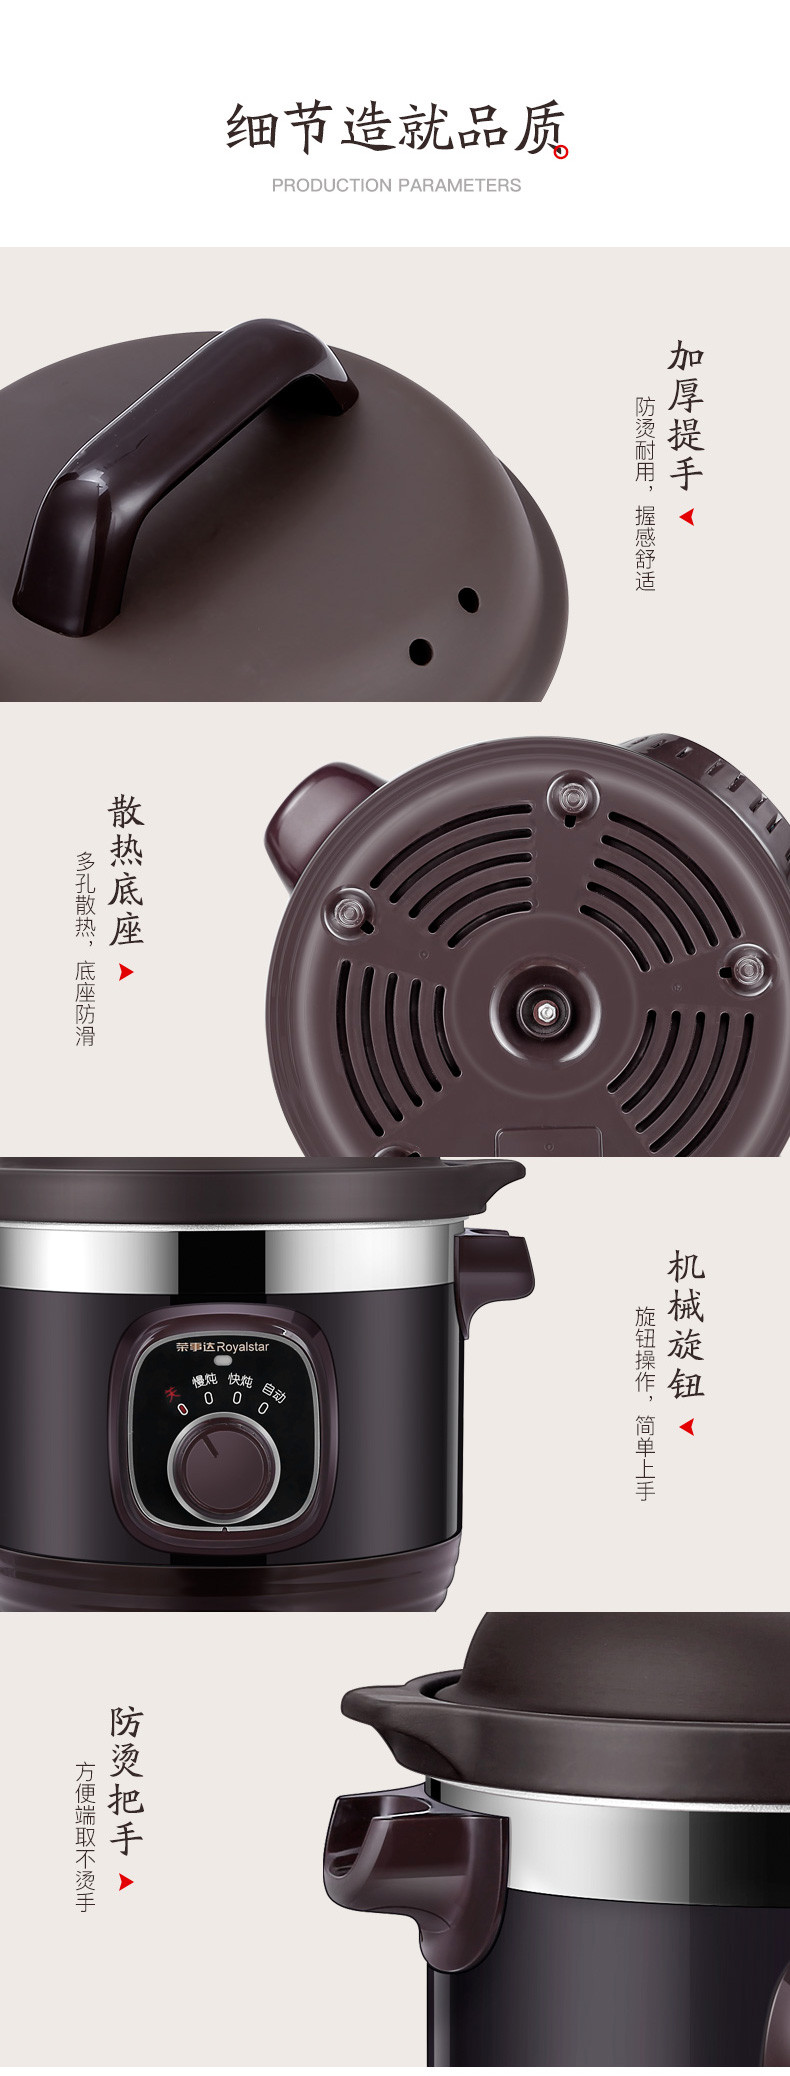 荣事达RDG-40WH紫砂锅家用煲汤电炖锅多功能养生精炖电砂锅